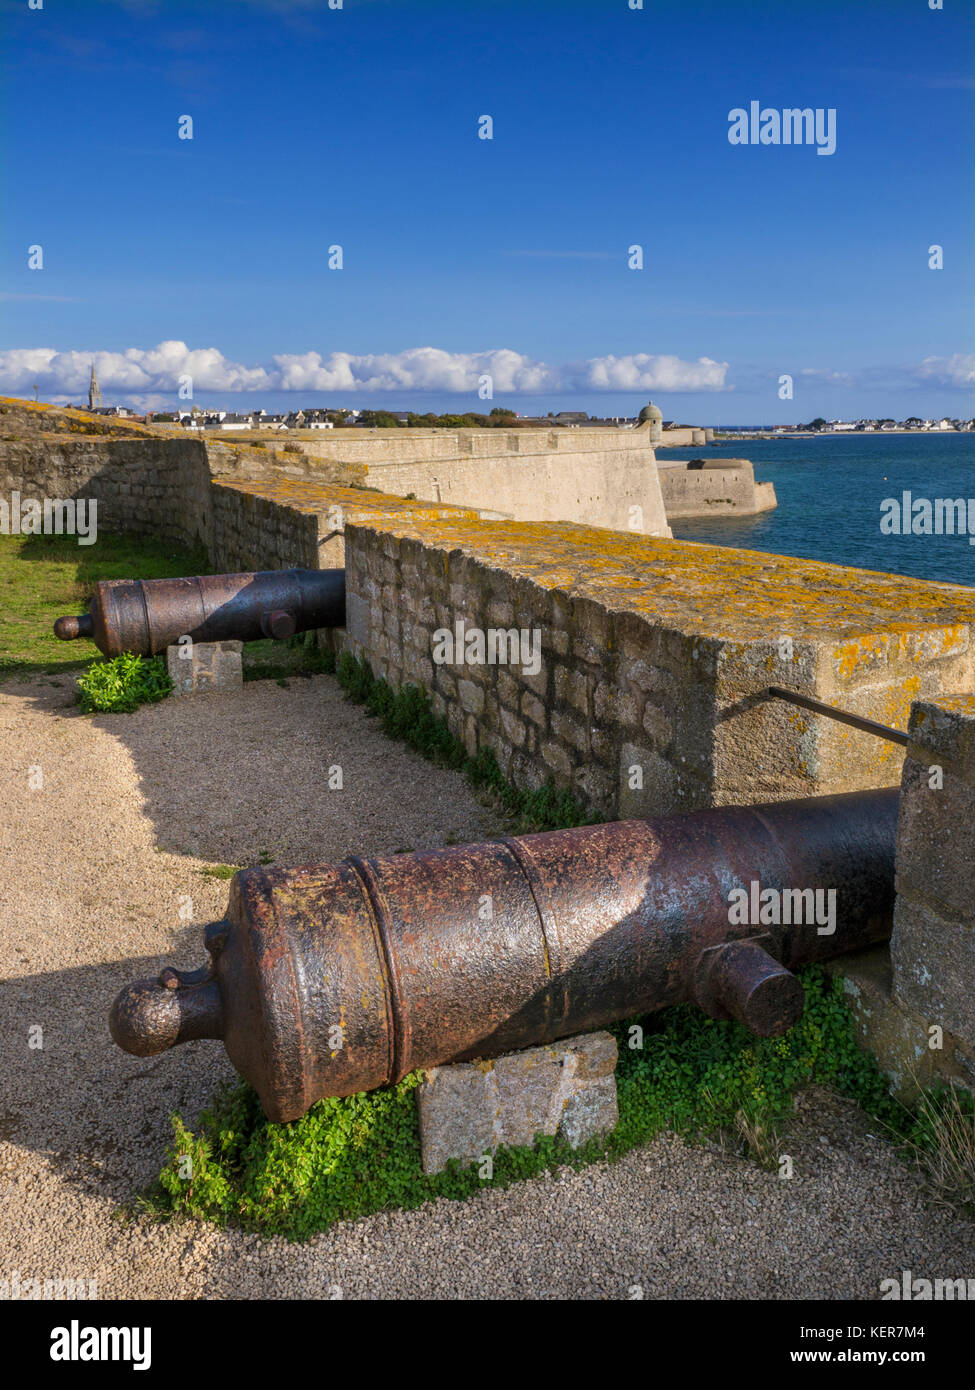 Les canons du fort la citadelle la citadelle / une région côtière en forme d'étoiles historique fort, construit en 1591 à Port-louis, Lorient, Bretagne France Banque D'Images